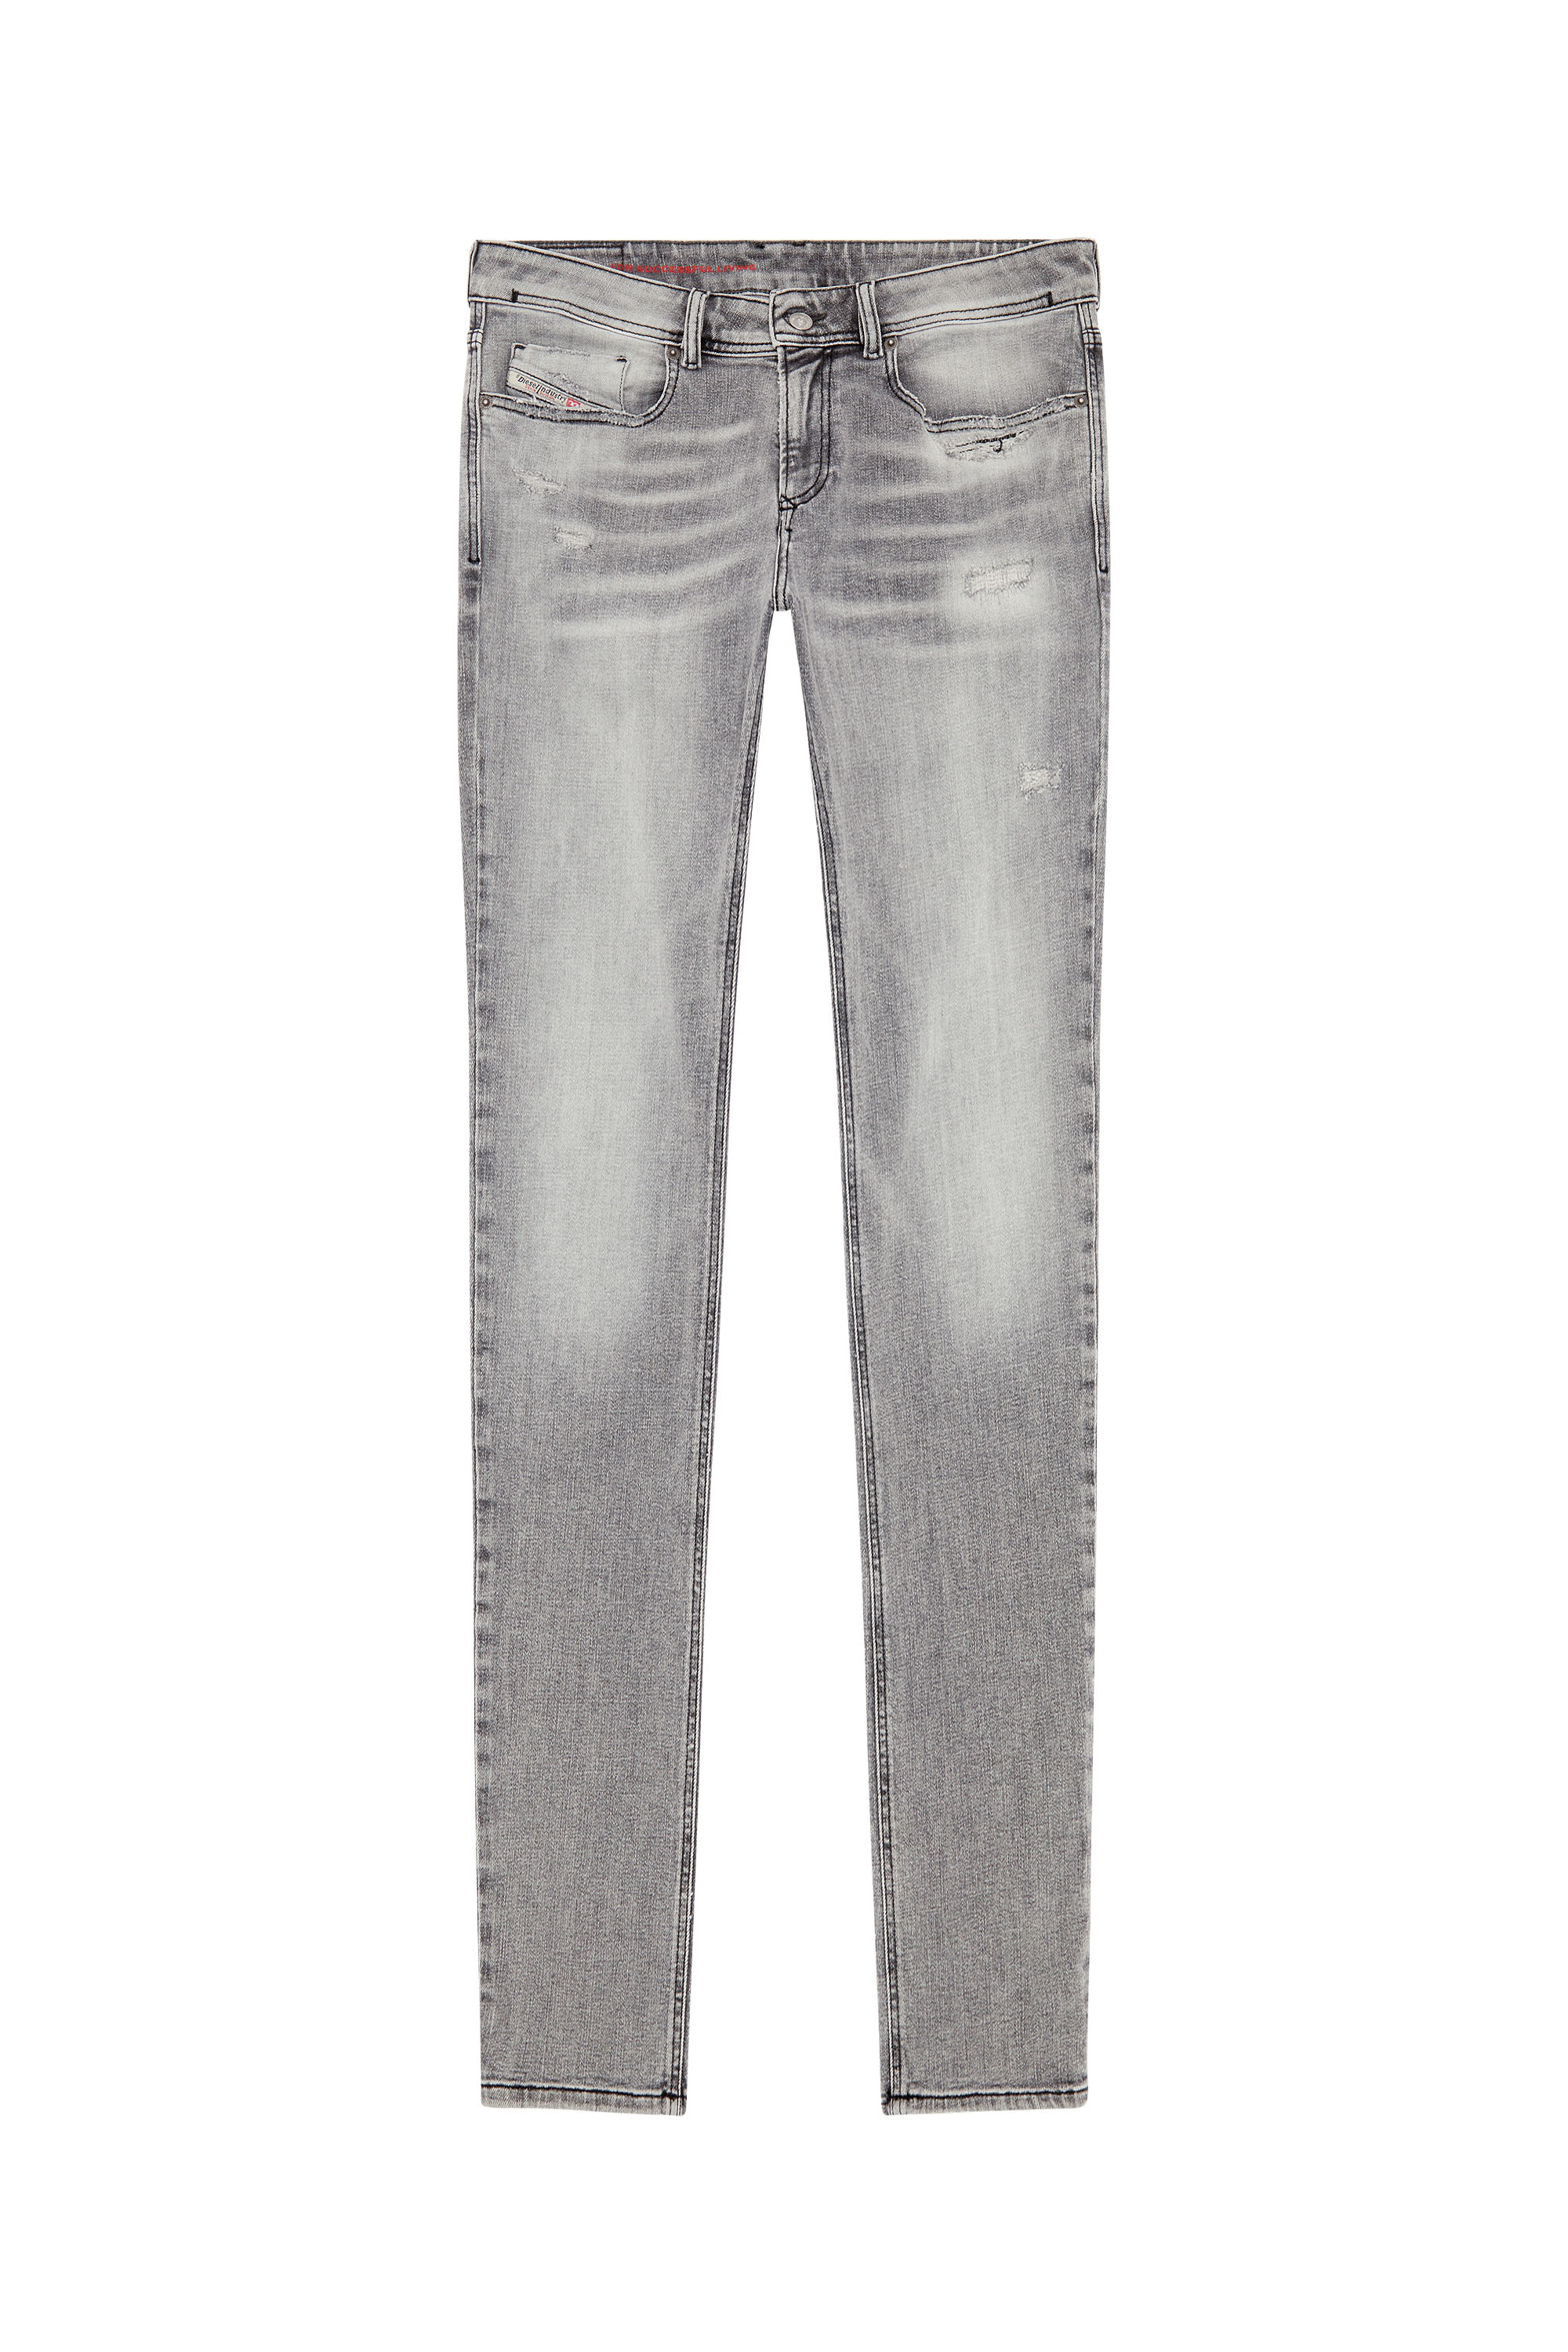 Diesel - Man Skinny Jeans 1979 Sleenker E9B97, Black/Dark grey - Image 3